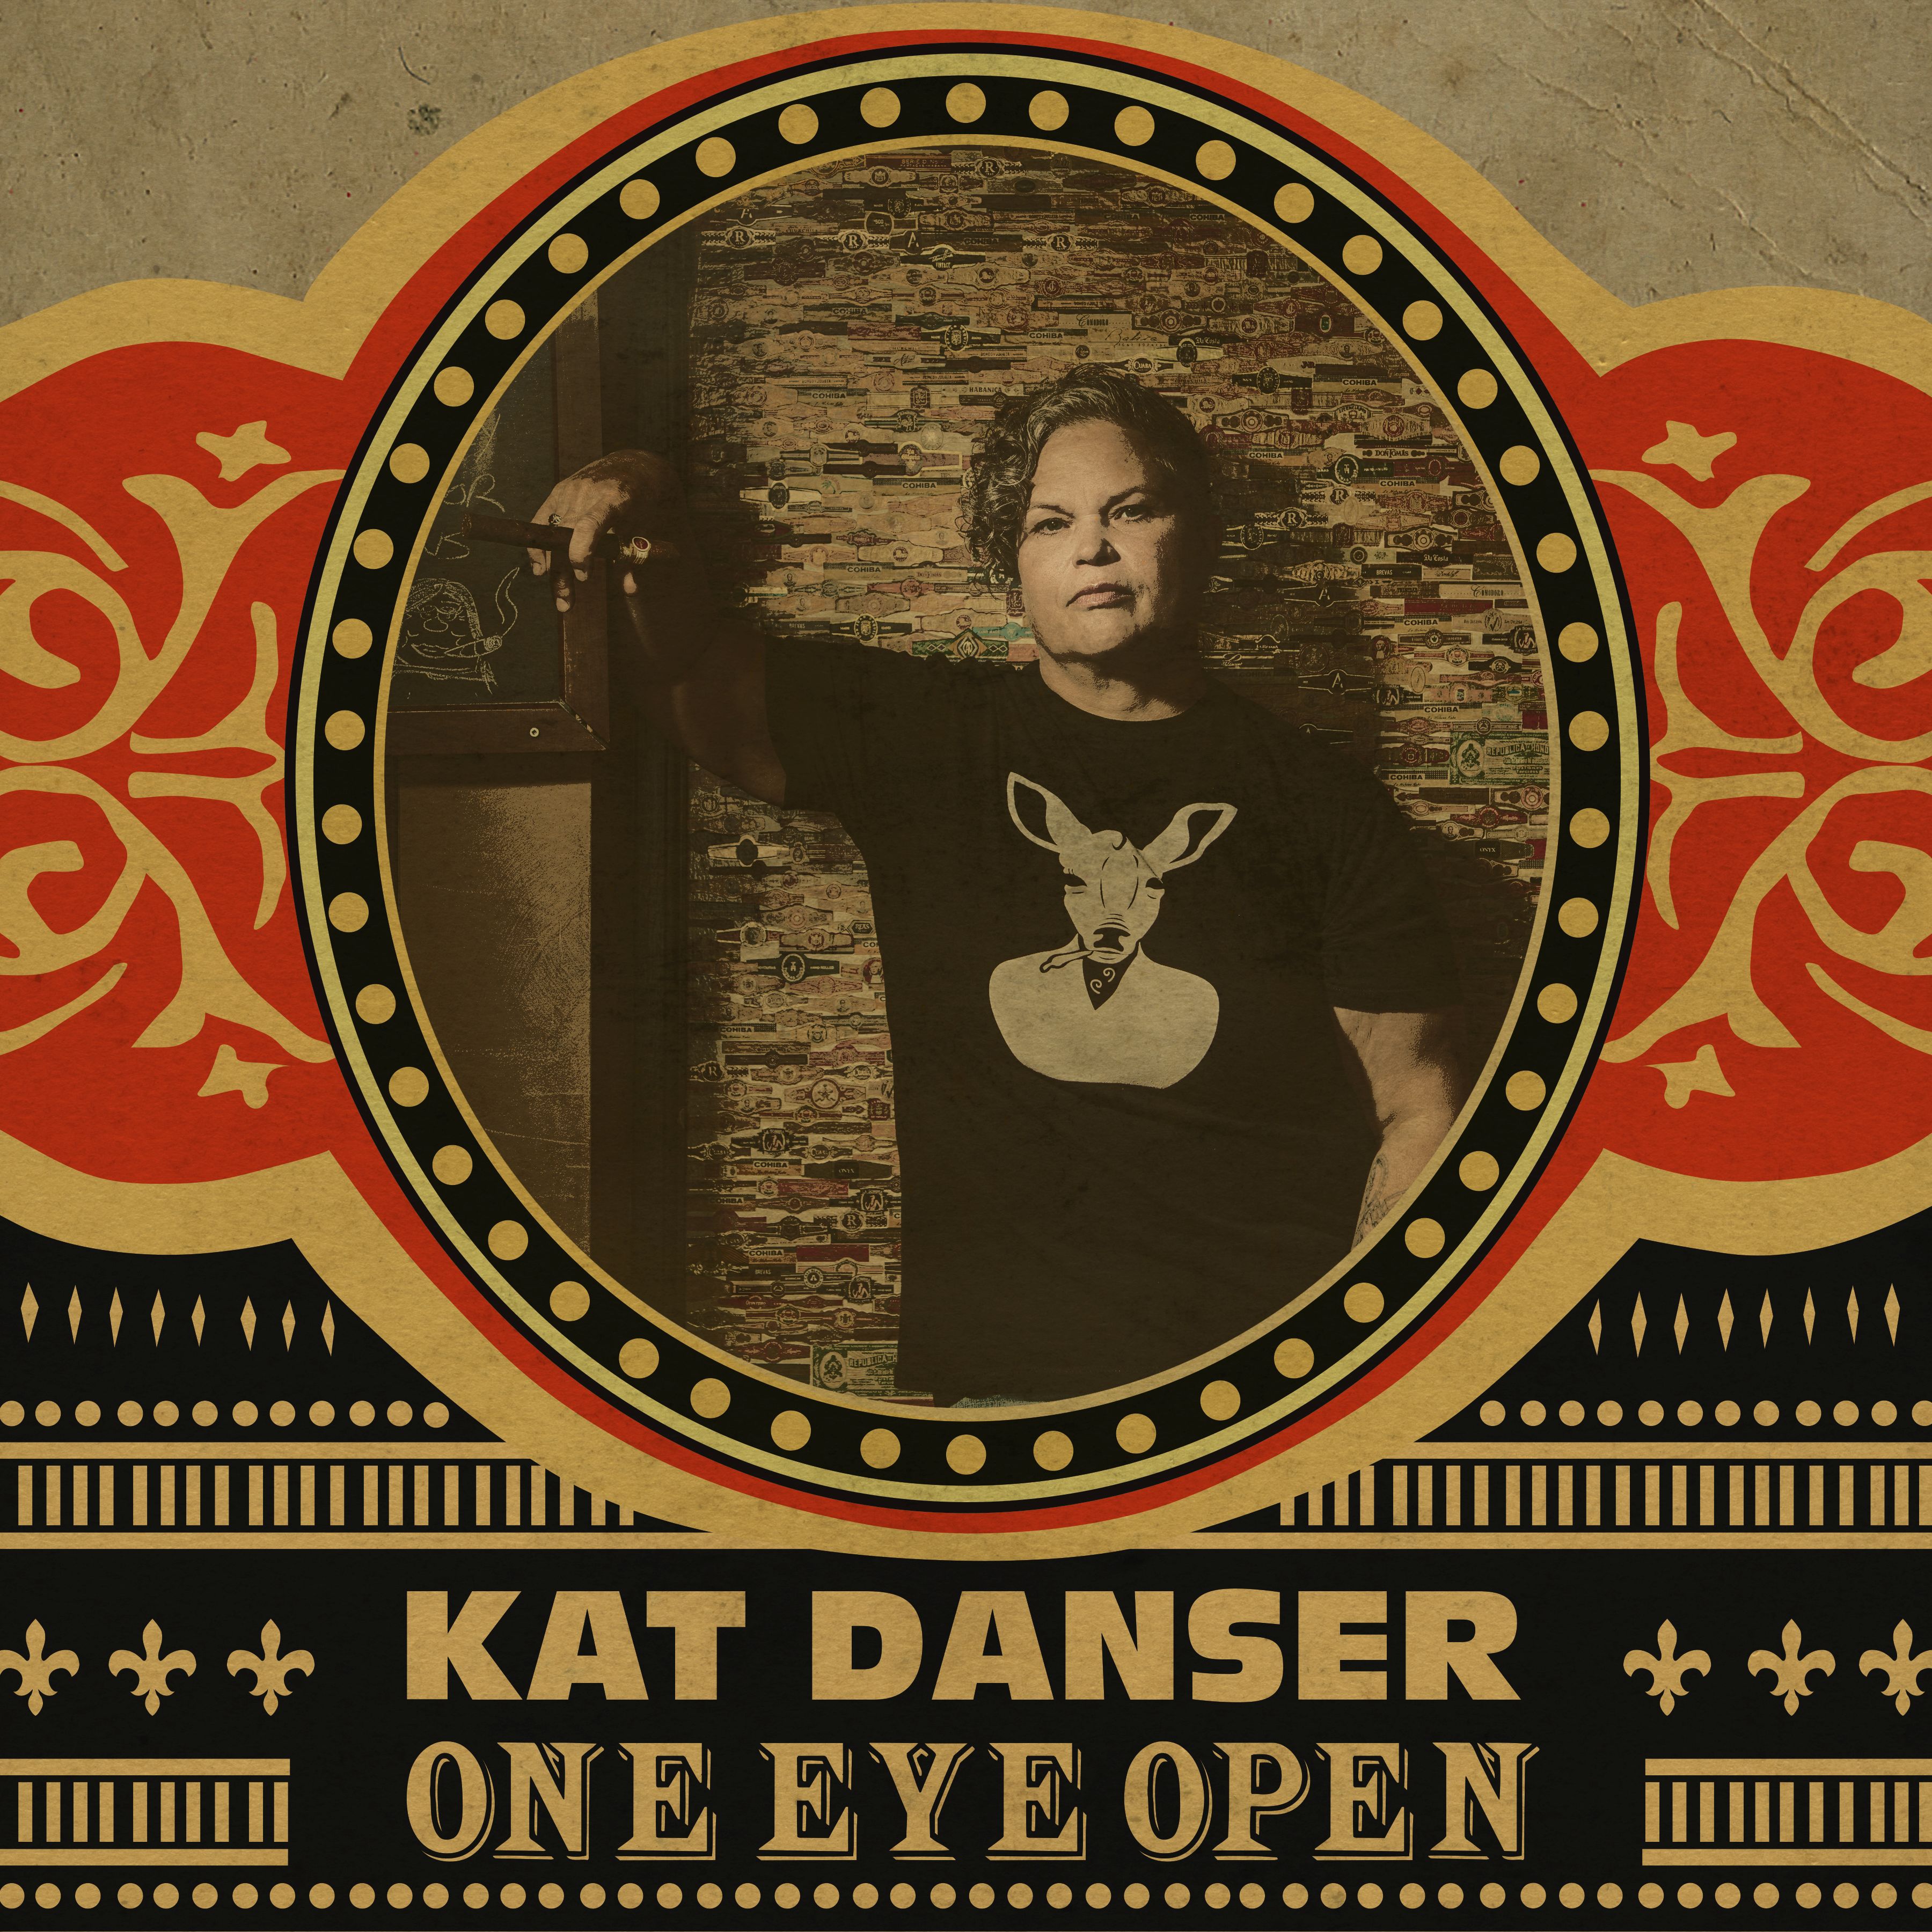 Danser, Kat - One Eye Open